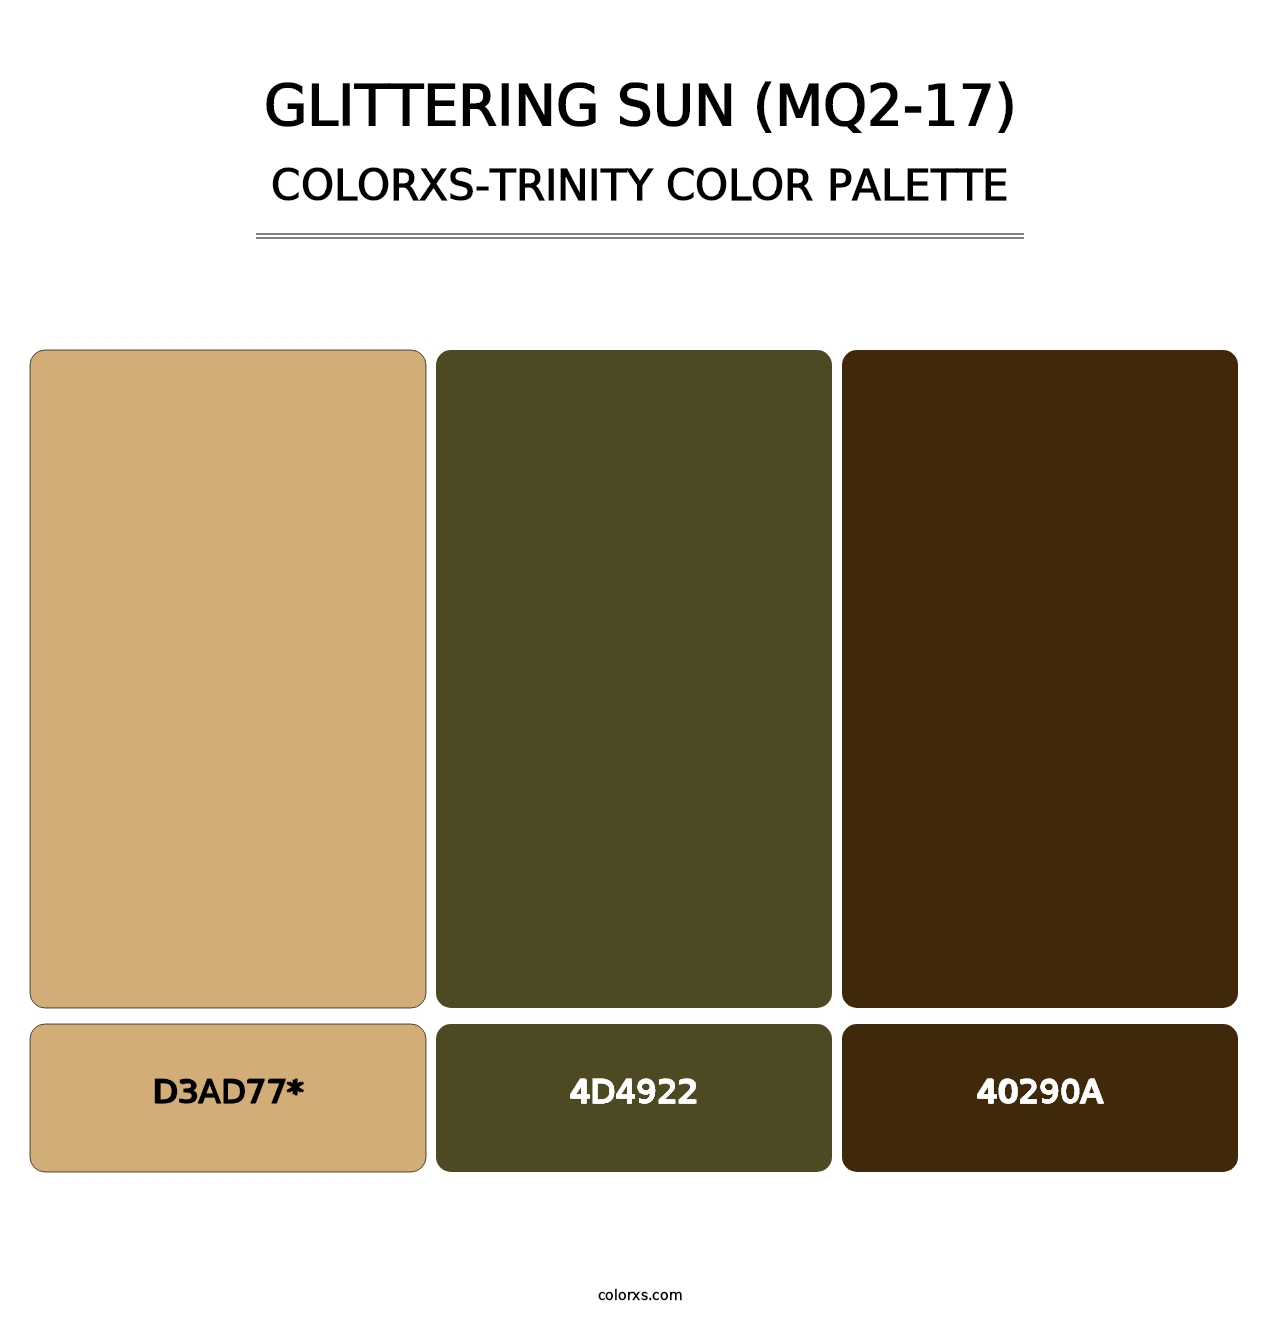 Glittering Sun (MQ2-17) - Colorxs Trinity Palette